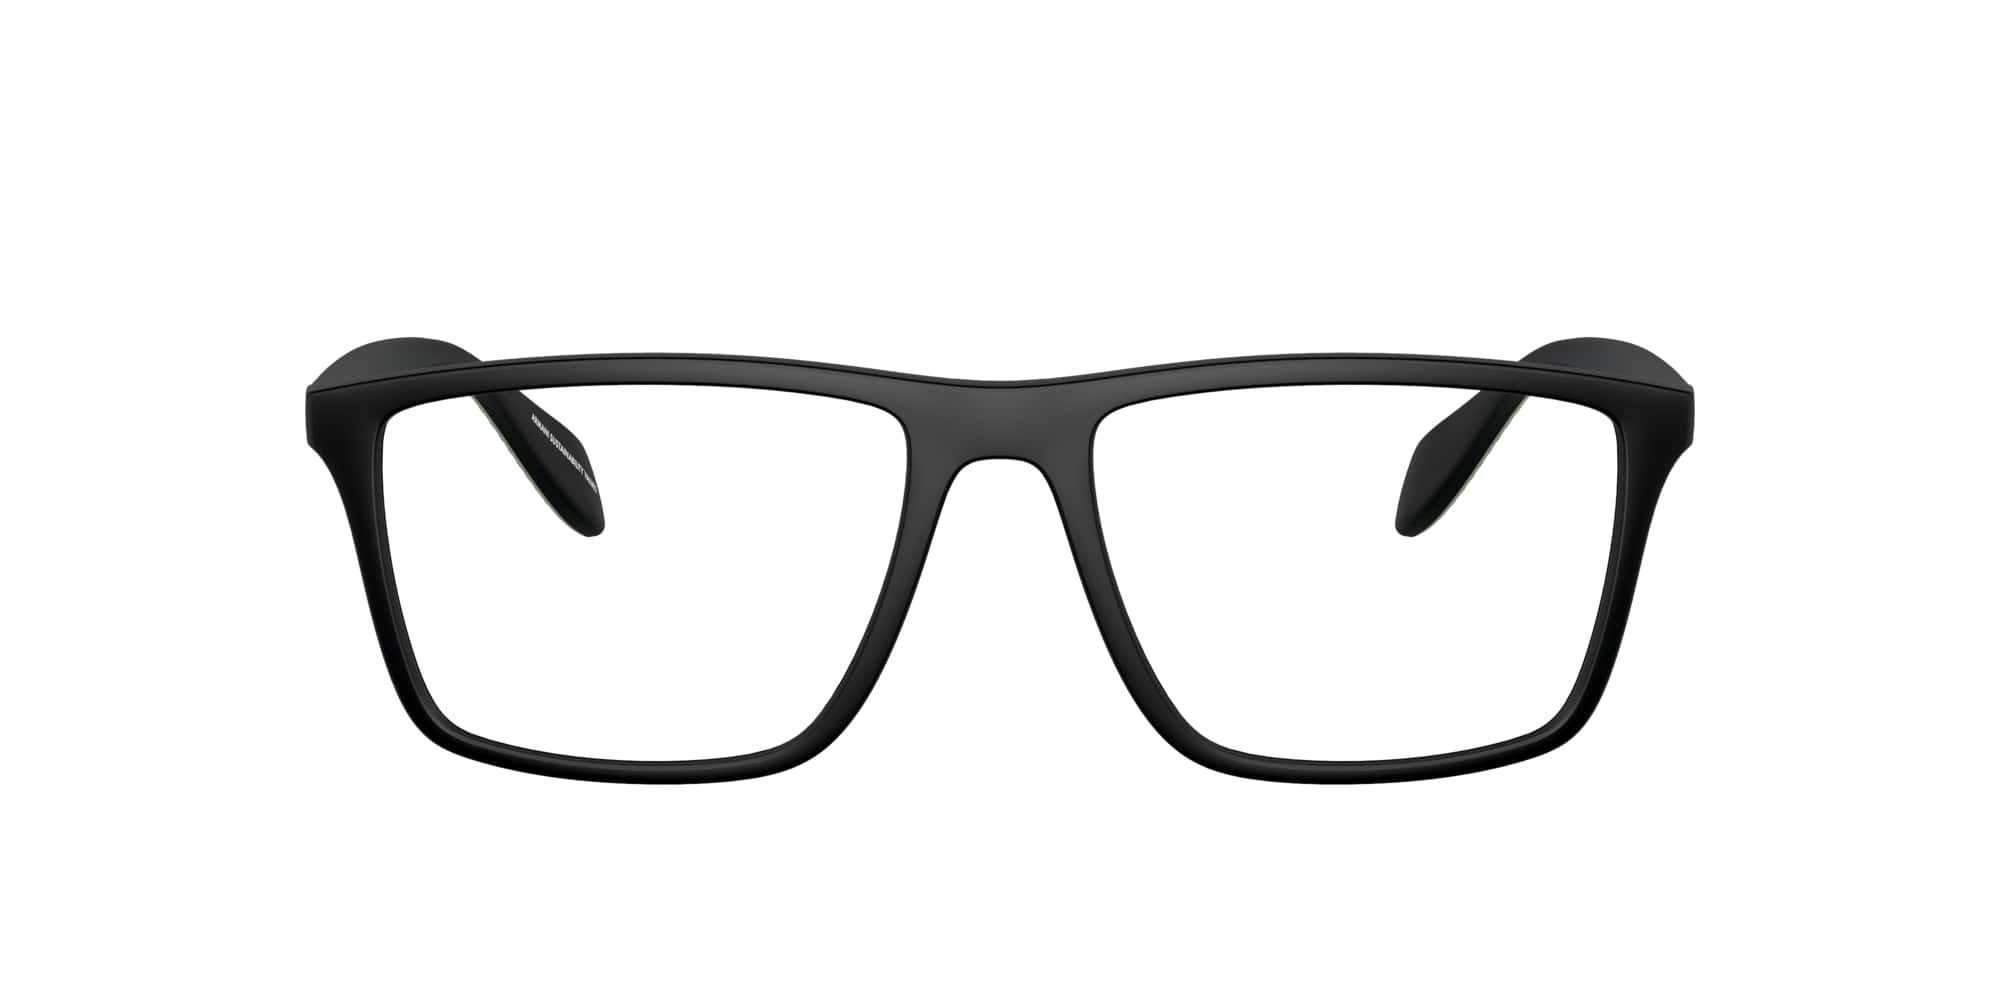 Emporio Armani Brille für Damen in schwarz matt EA3230 5001 53